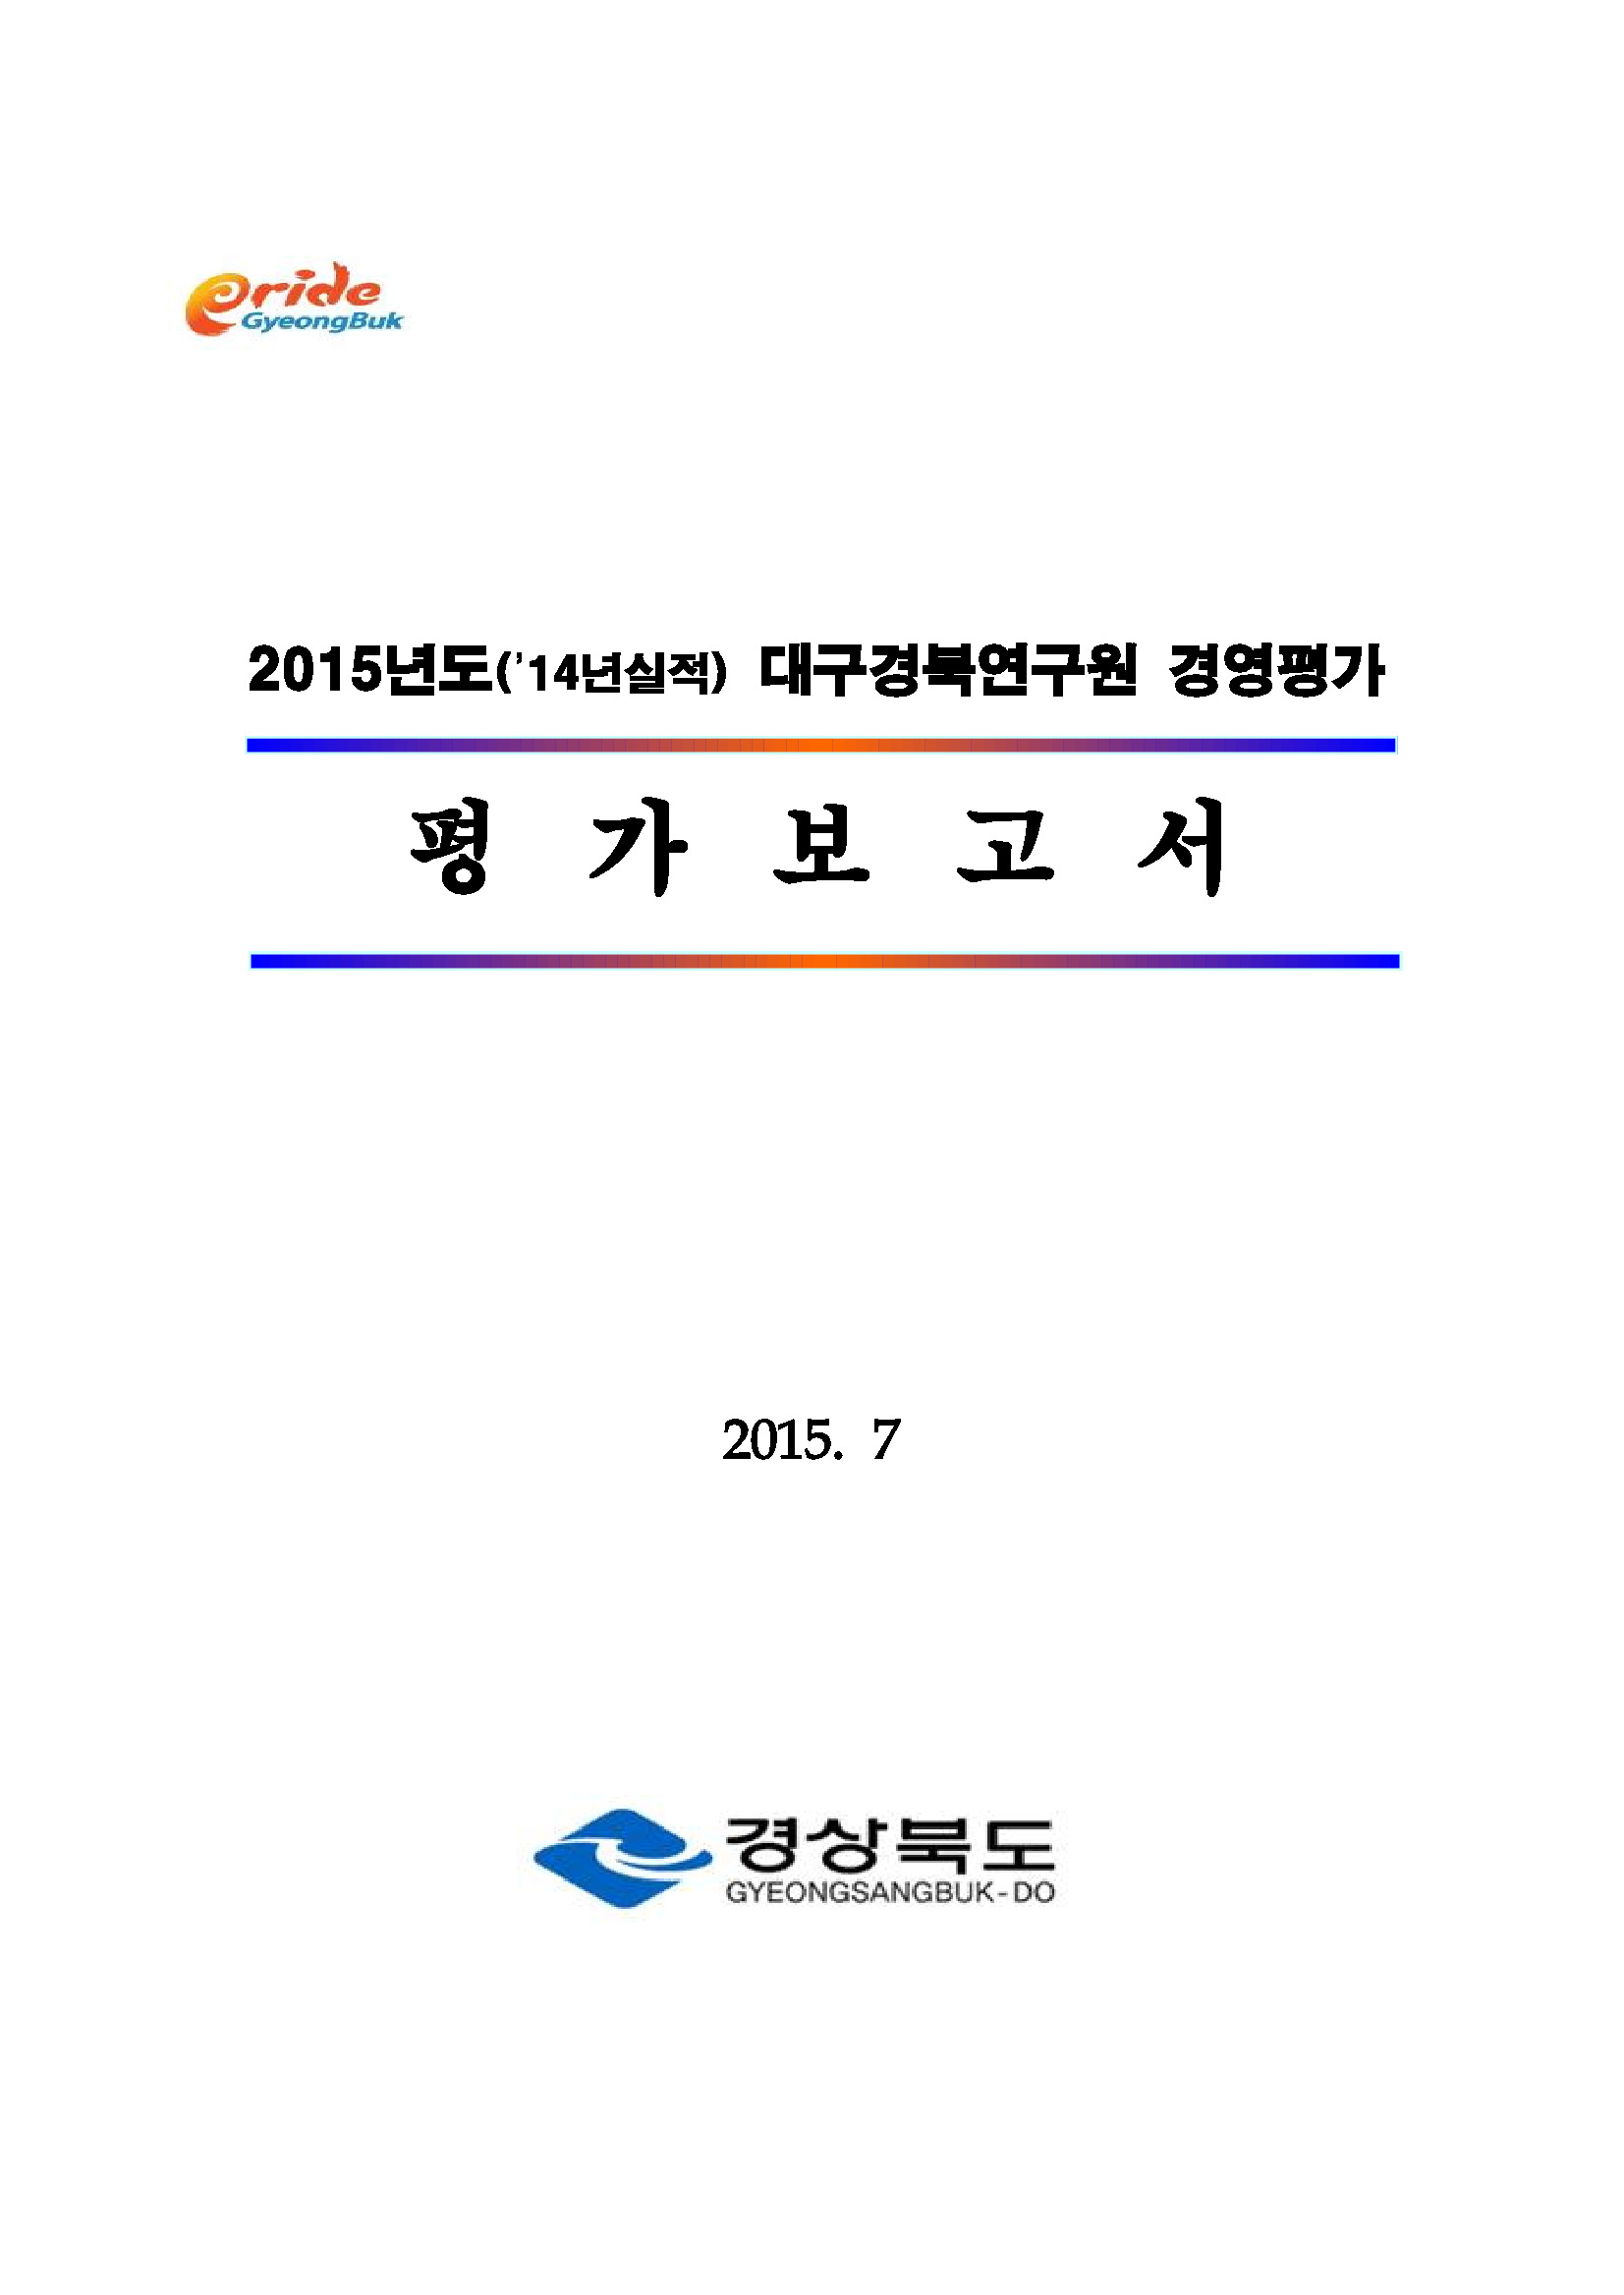 2014년 대구경북연구원 경영평가